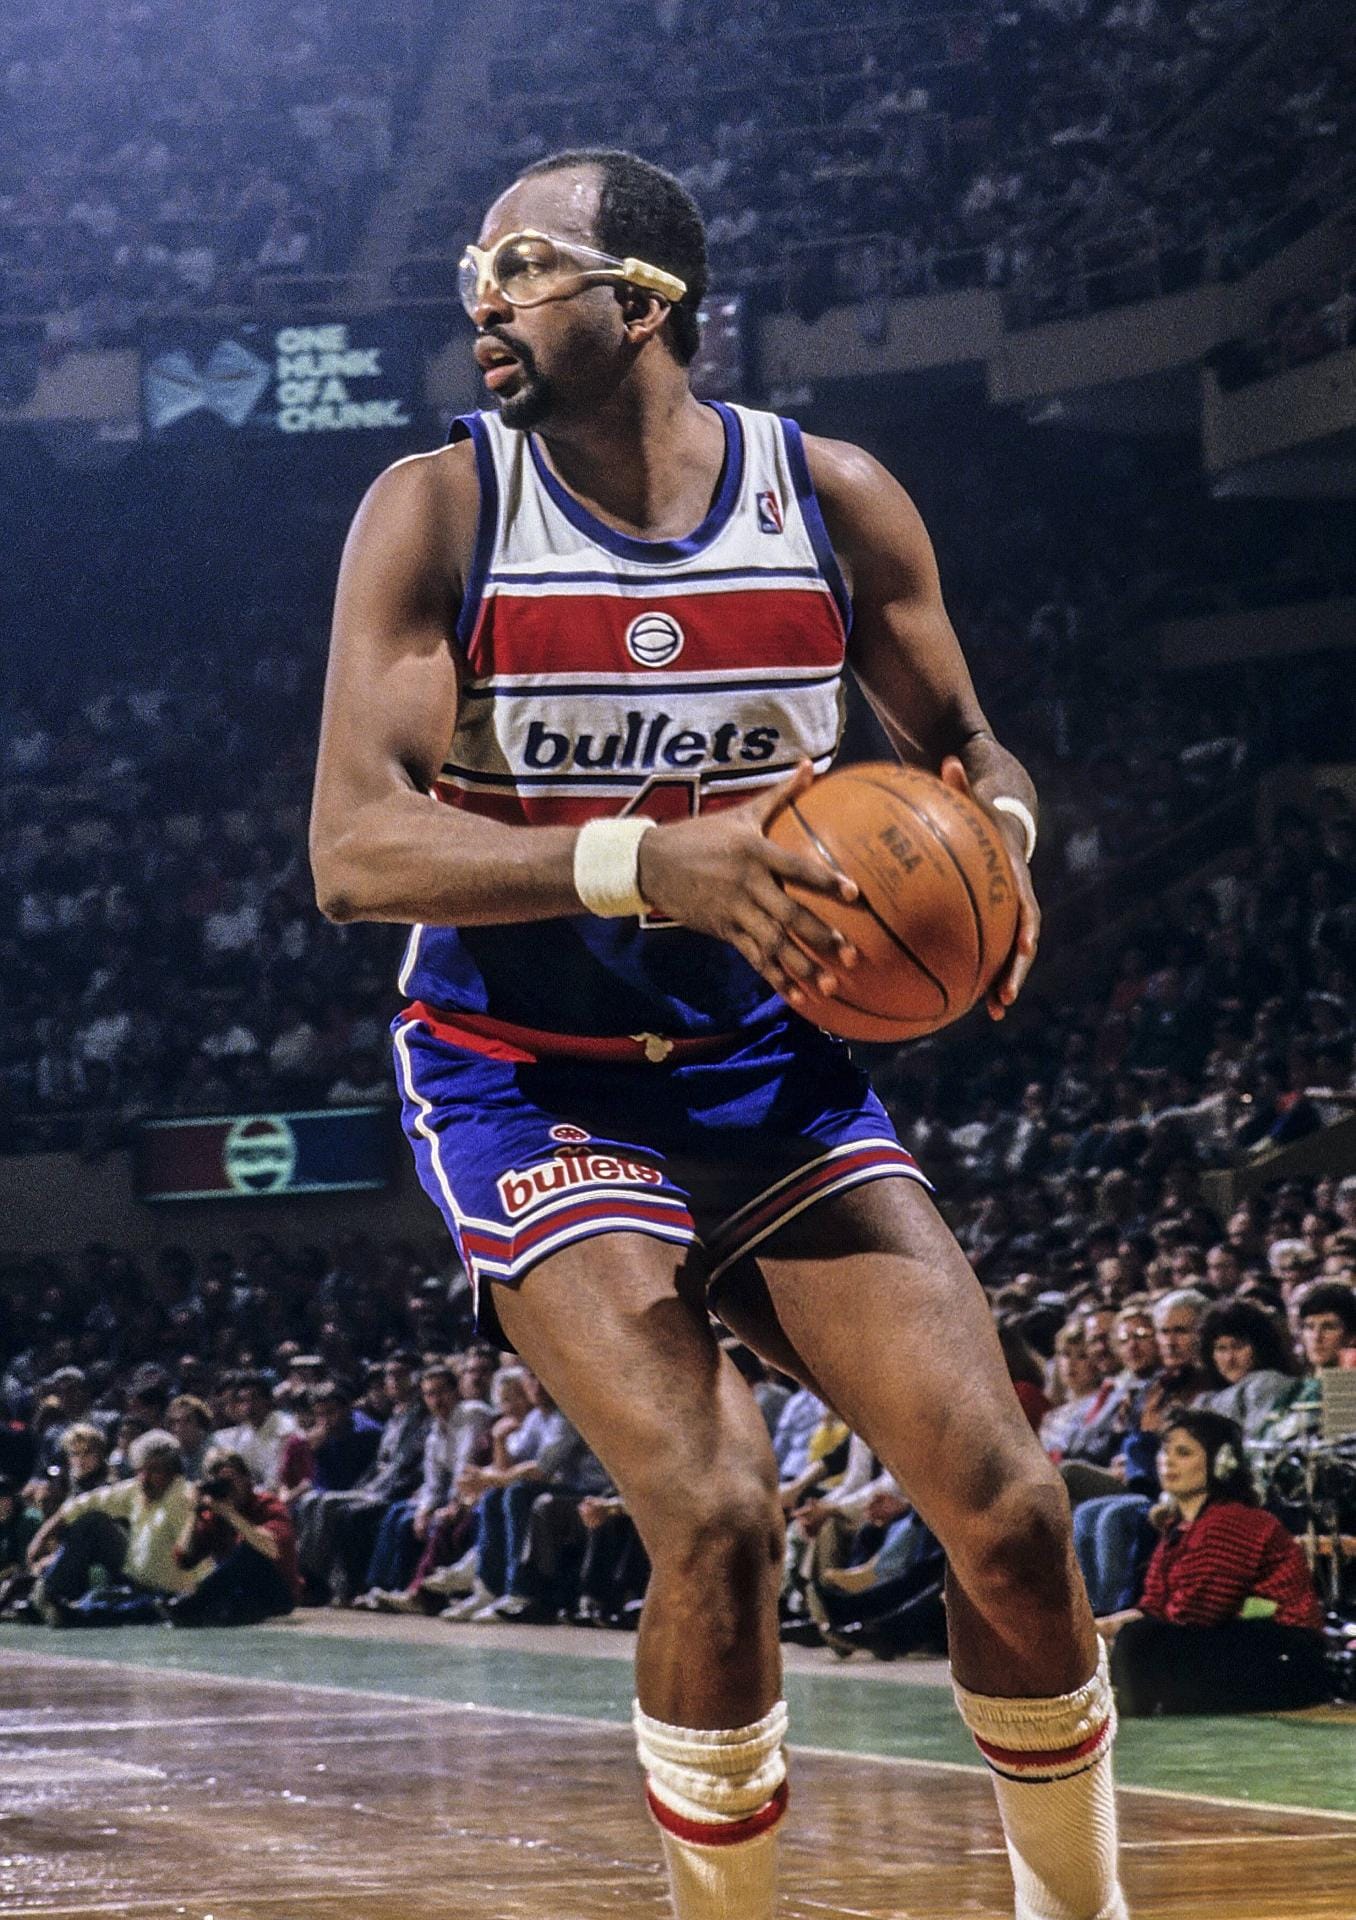 Moses Malone war der erste Spieler, der den direkten Sprung von der Highschool zu den Profis geschafft hat. Zunächst spielte Malone in der ABA, später in der NBA. 1983 gewann er mit den Philadelphia 76ers an der Seite von Julius Erving und Maurice Cheeks den Titel. Außerdem wurde er dreimal MVP (1979, '82, '83). 21 Saisons hielt der Center die Knochen hin. Er war der letzte Aktive, der auch in der ABA gespielt hatte. In seiner Karriere erzielte er durchschnittlich 20,6 Punkte und 12,2 Rebounds pro Spiel.